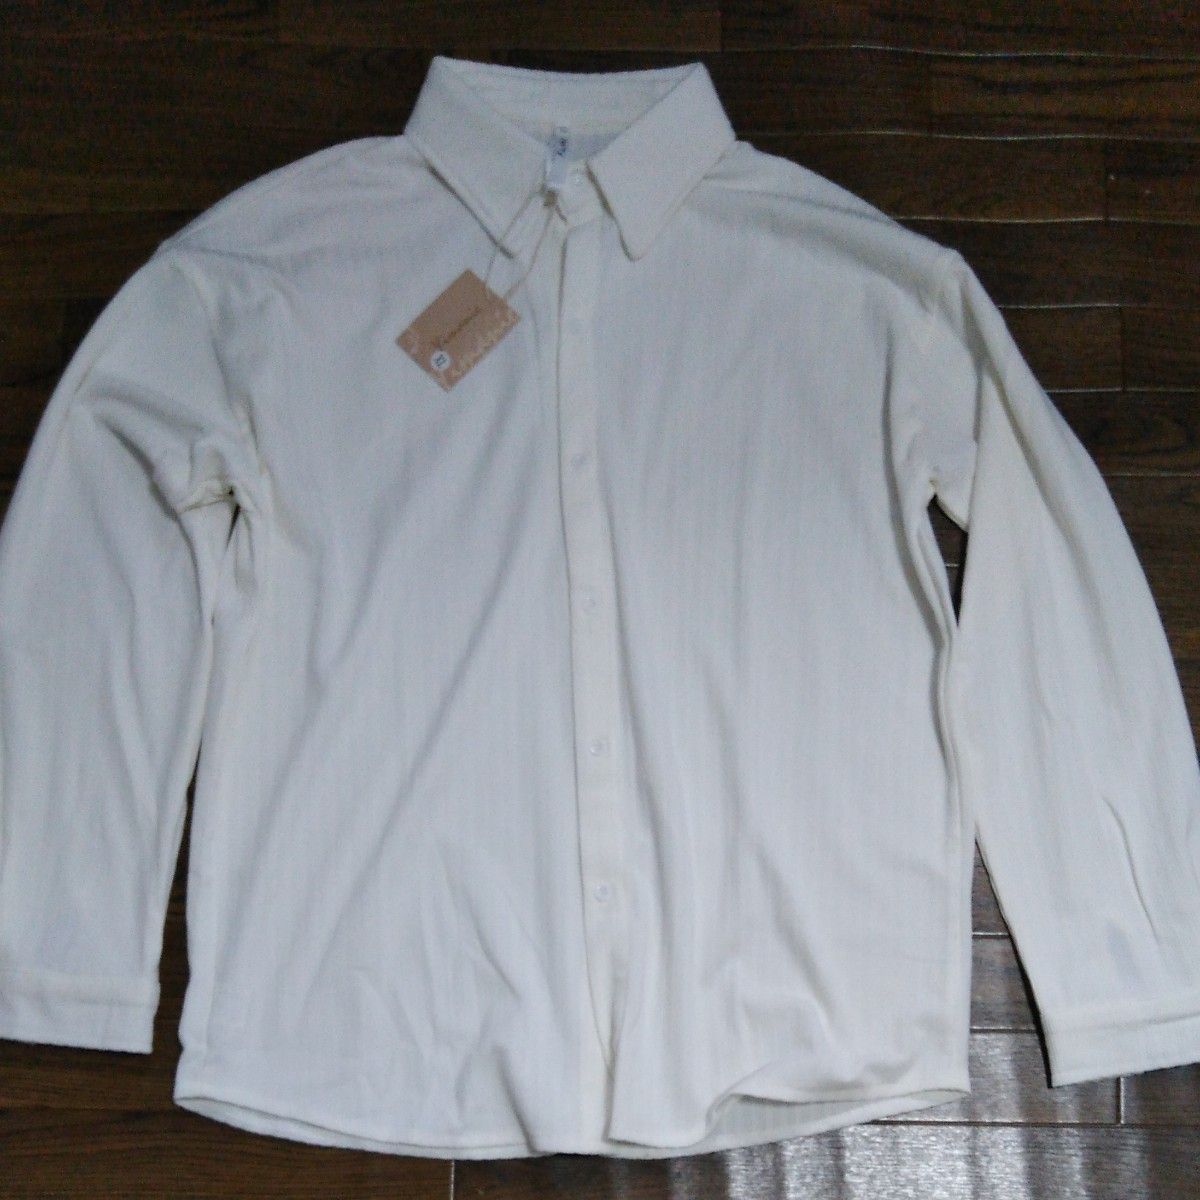 新品未使用コットン 長袖 シャツXLサイズLLサイズカジュアルシャツ高級シャツ 父の日プレゼント